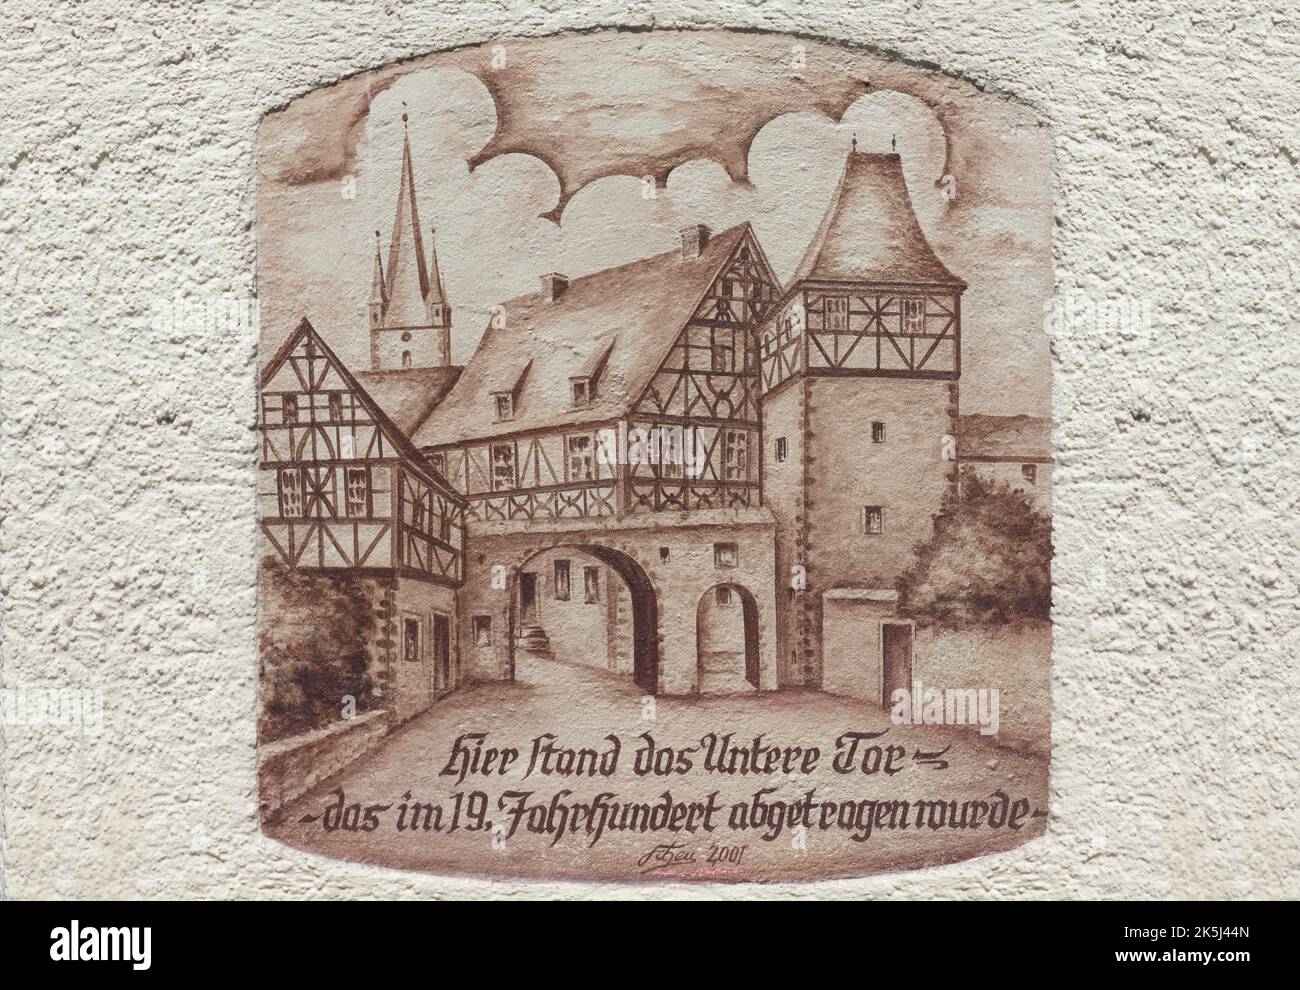 Wandmalerei, Erinnerung an ein mittelalterliches Stadttor, Zeil am Main, Unterfranken, Bayern, Deutschland Stockfoto